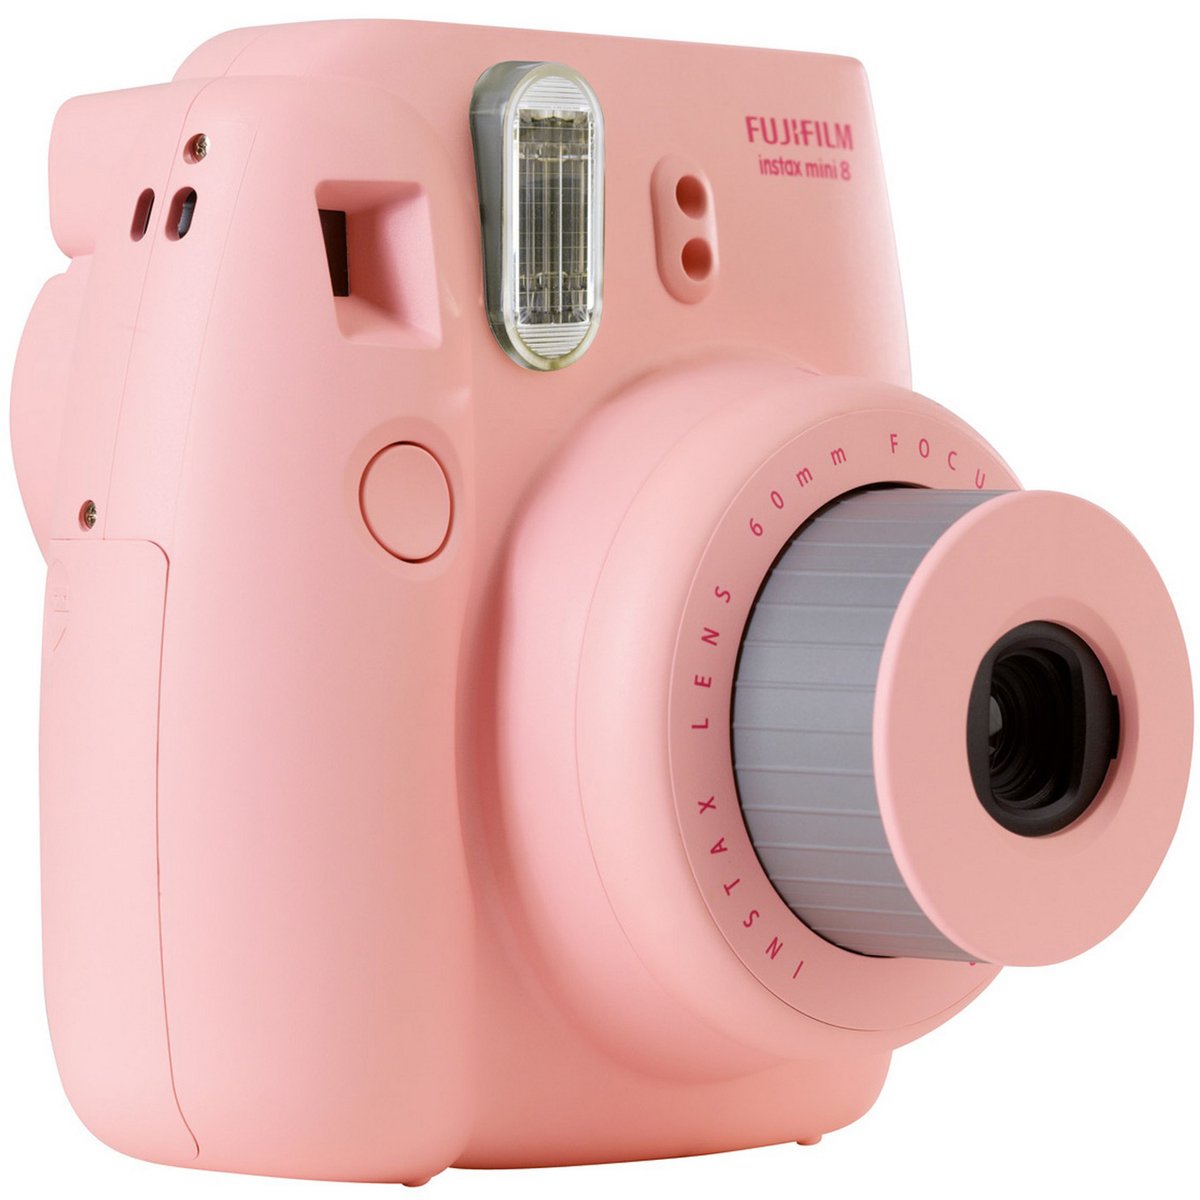 Fujifilm instax mini 8 Instant Camera Pink